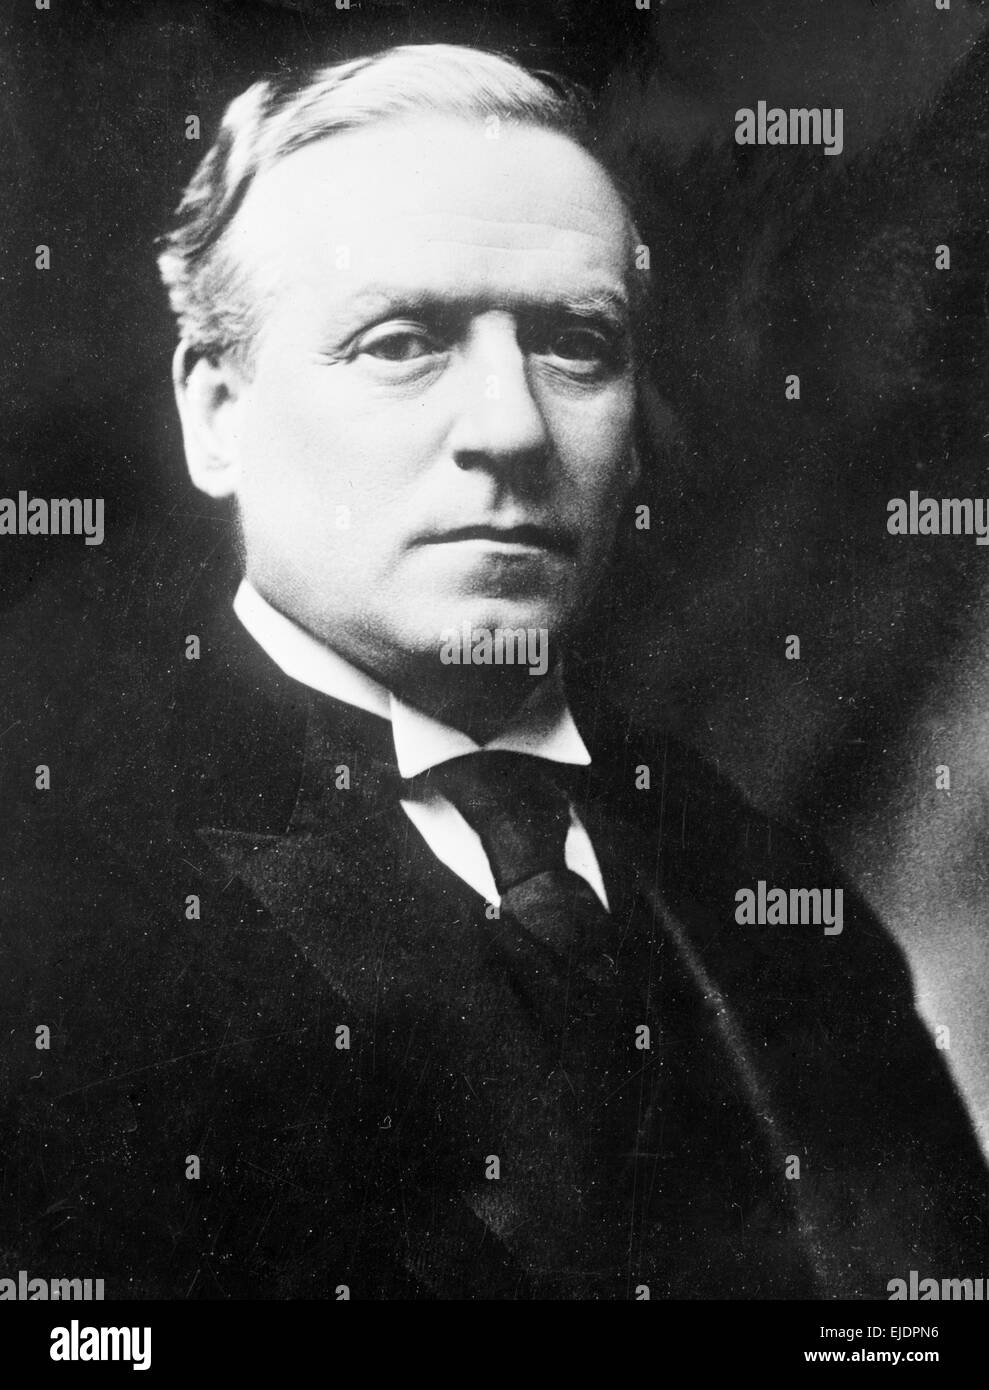 Premier ministre H.H. Libéral Asquith, Premier Ministre du Royaume-Uni de 1908 à 1916. Herbert Henry Asquith Banque D'Images